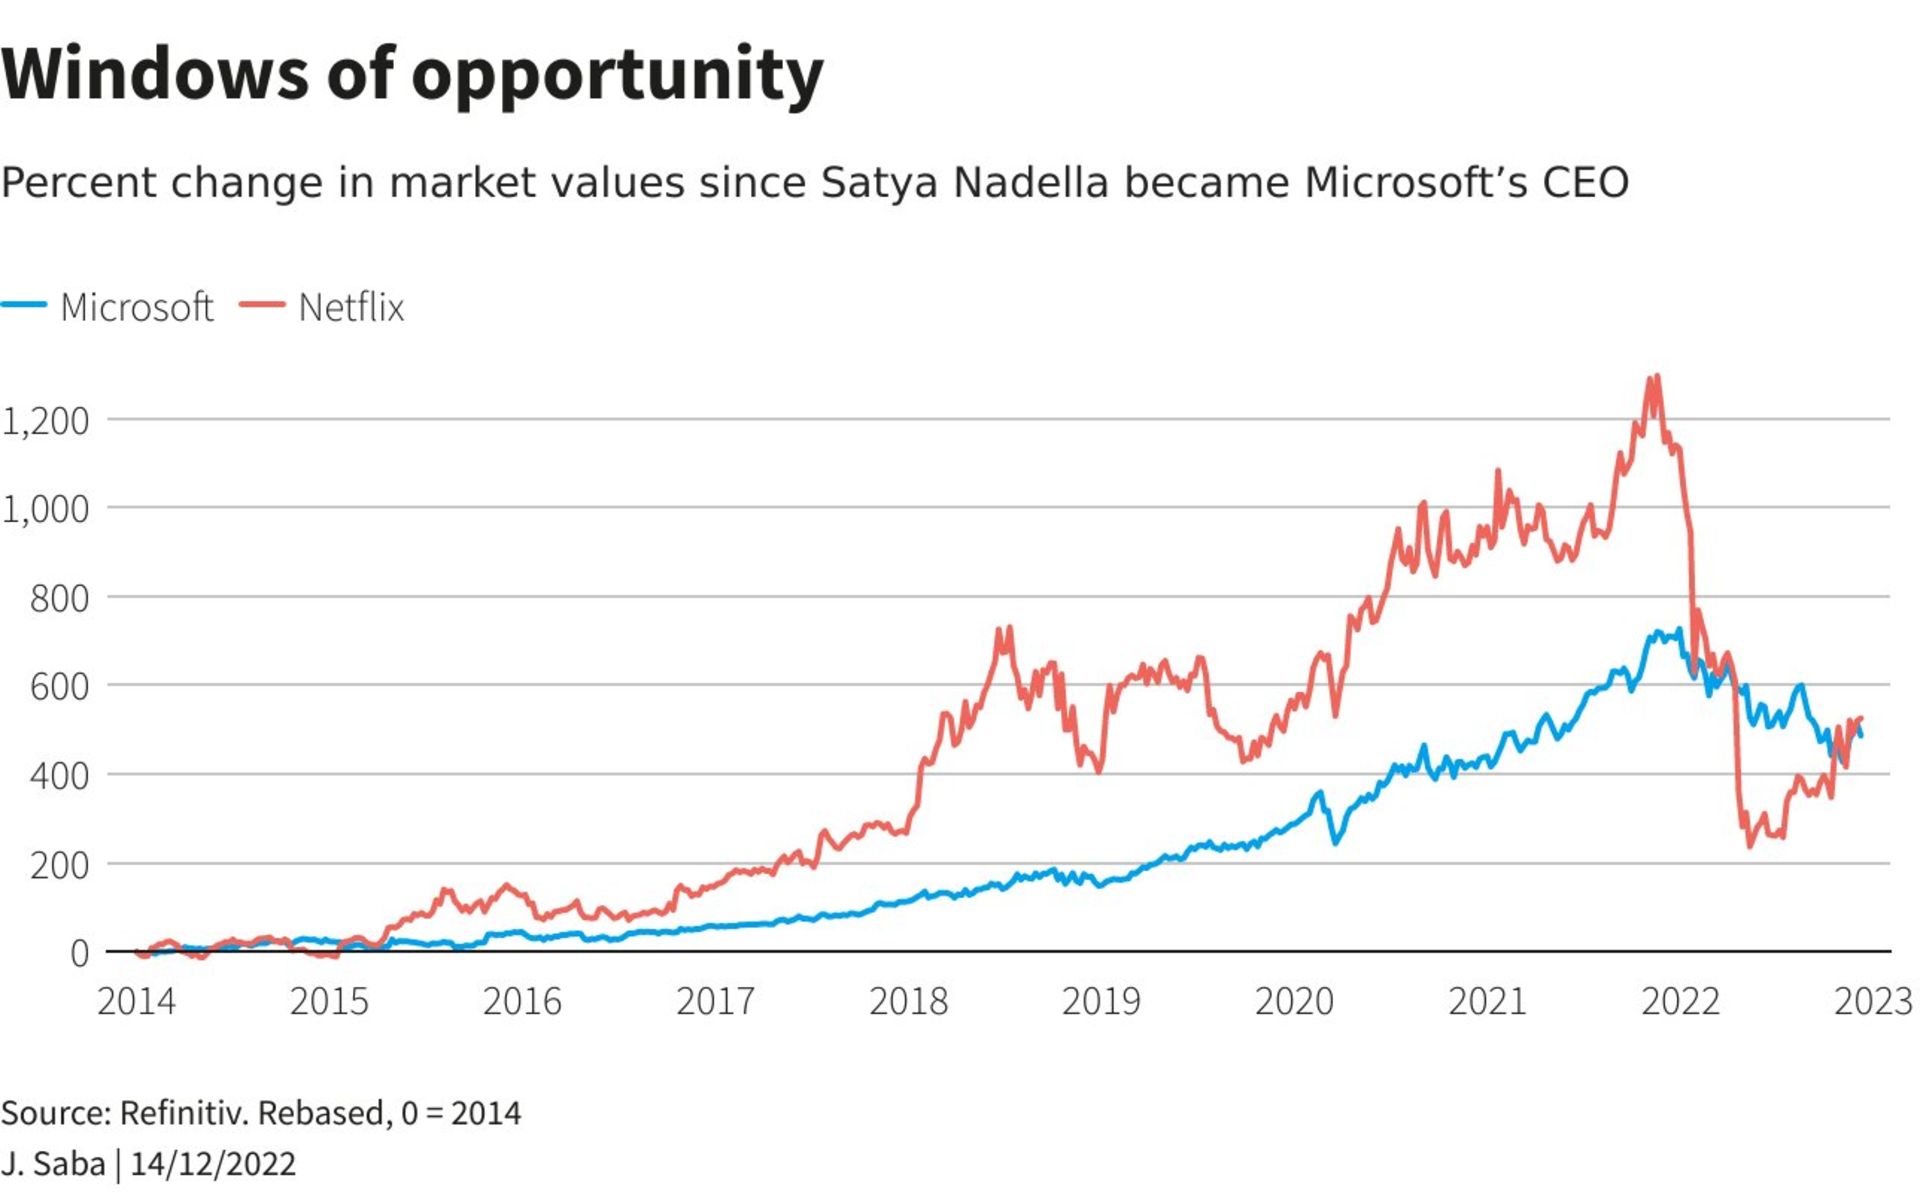 نرخ تغییر ارزش مایکروسافت و نتفلیکس